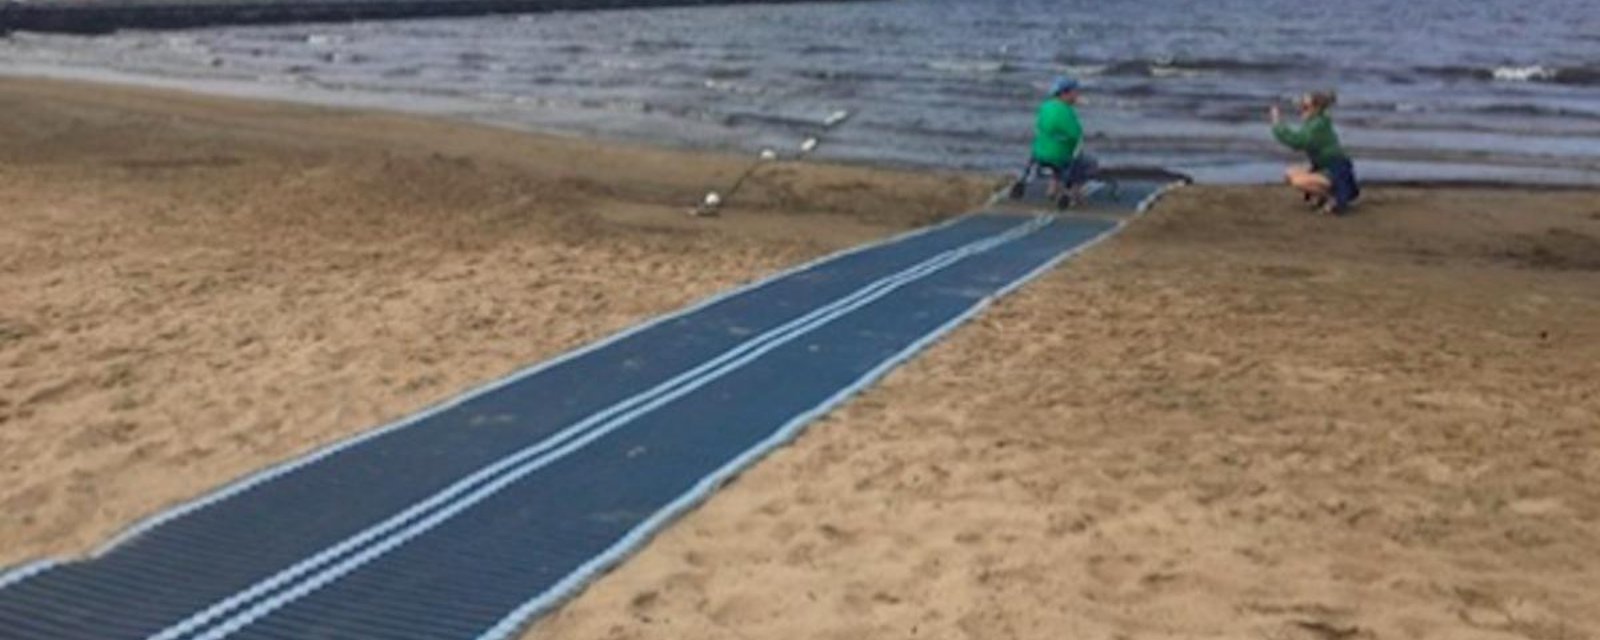 En Ontario, des plages sont maintenant plus accessibles aux personnes à mobilité réduite, grâce à un système ingénieux